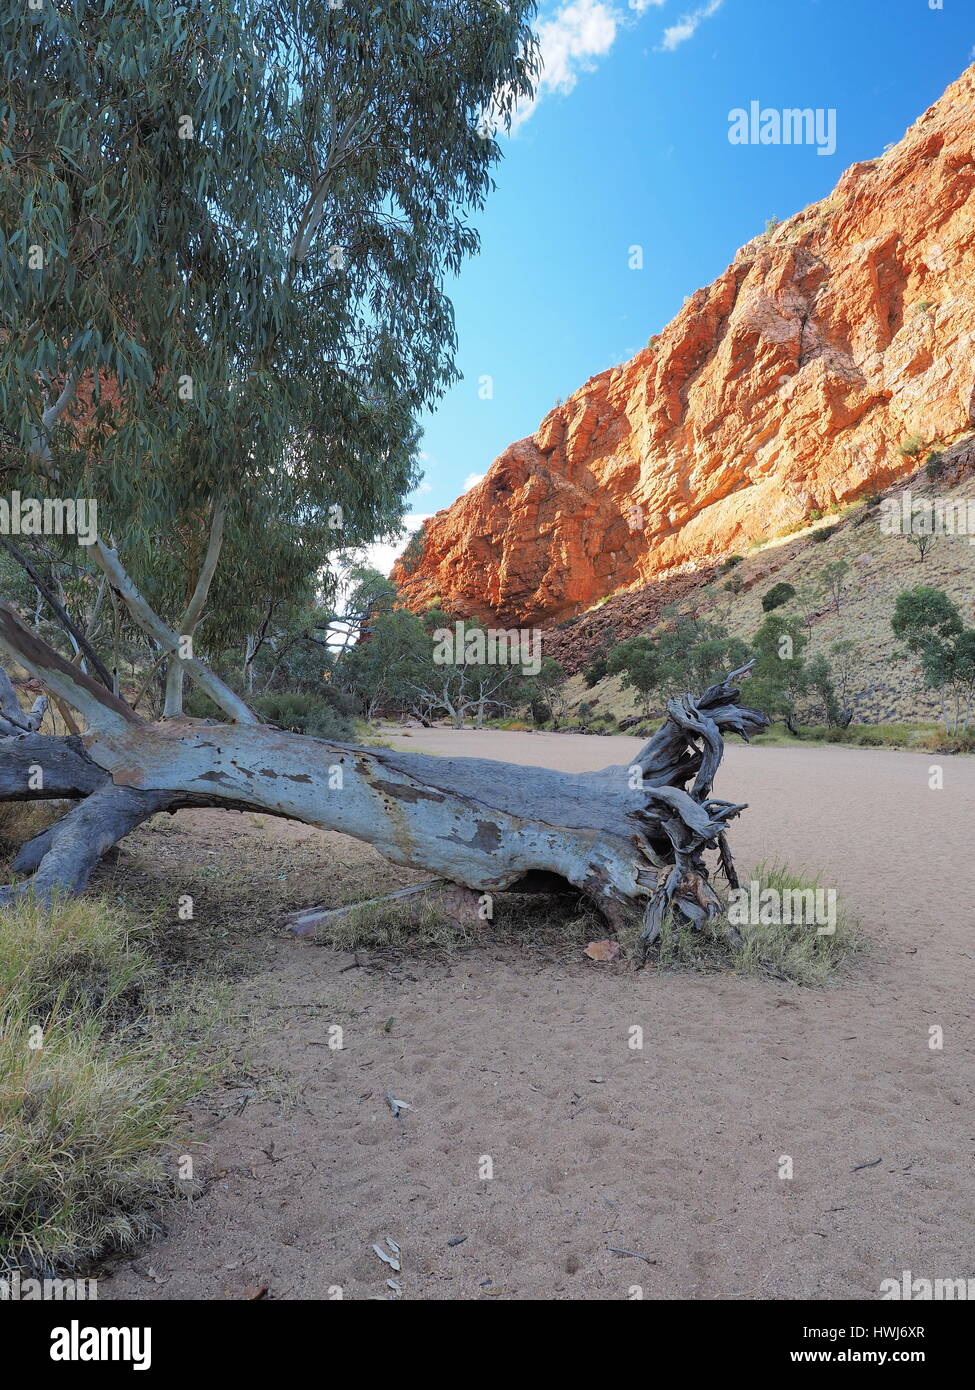 Am späten Nachmittag Outback im trockenen Simpsons Gap in den McDonnell Ranges in der Nähe von Alice Springs, Australien, Juni 2015 Stockfoto